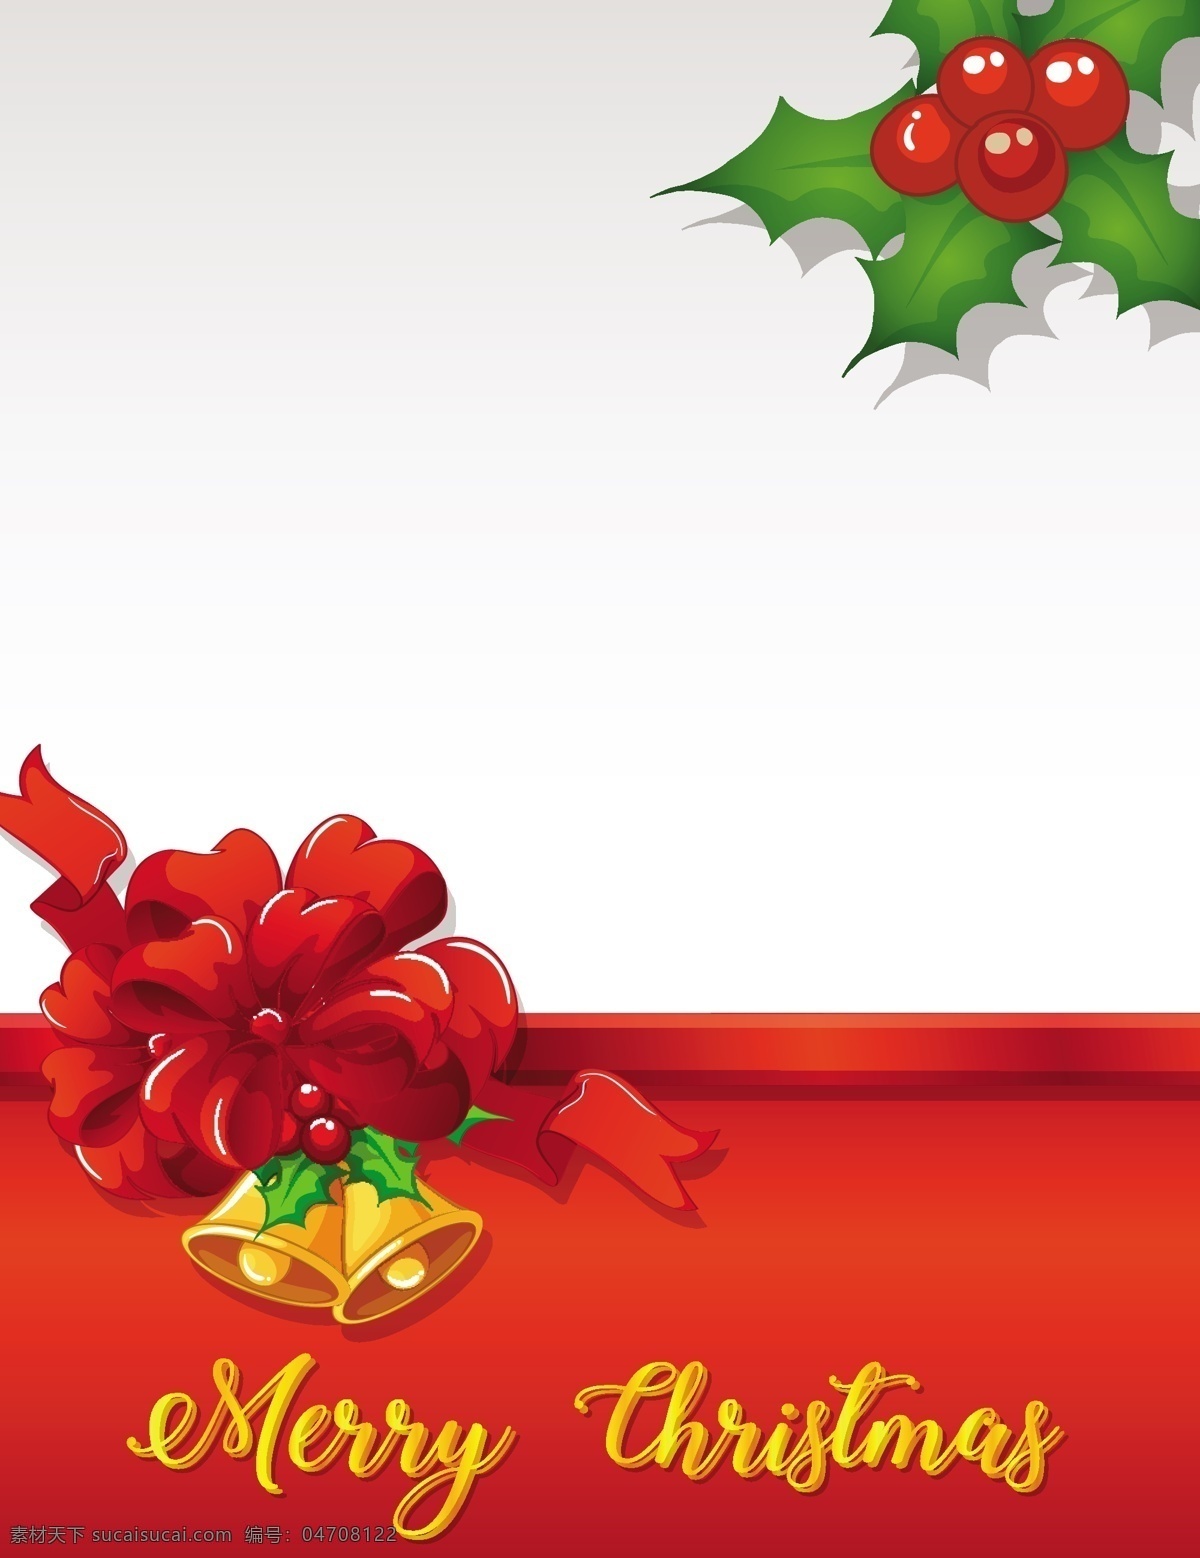 红丝 带 圣诞贺卡 模板 2018 圣诞节 红丝带 节日素材 铃铛 圣诞 圣诞素材 圣诞元素 装饰花卉